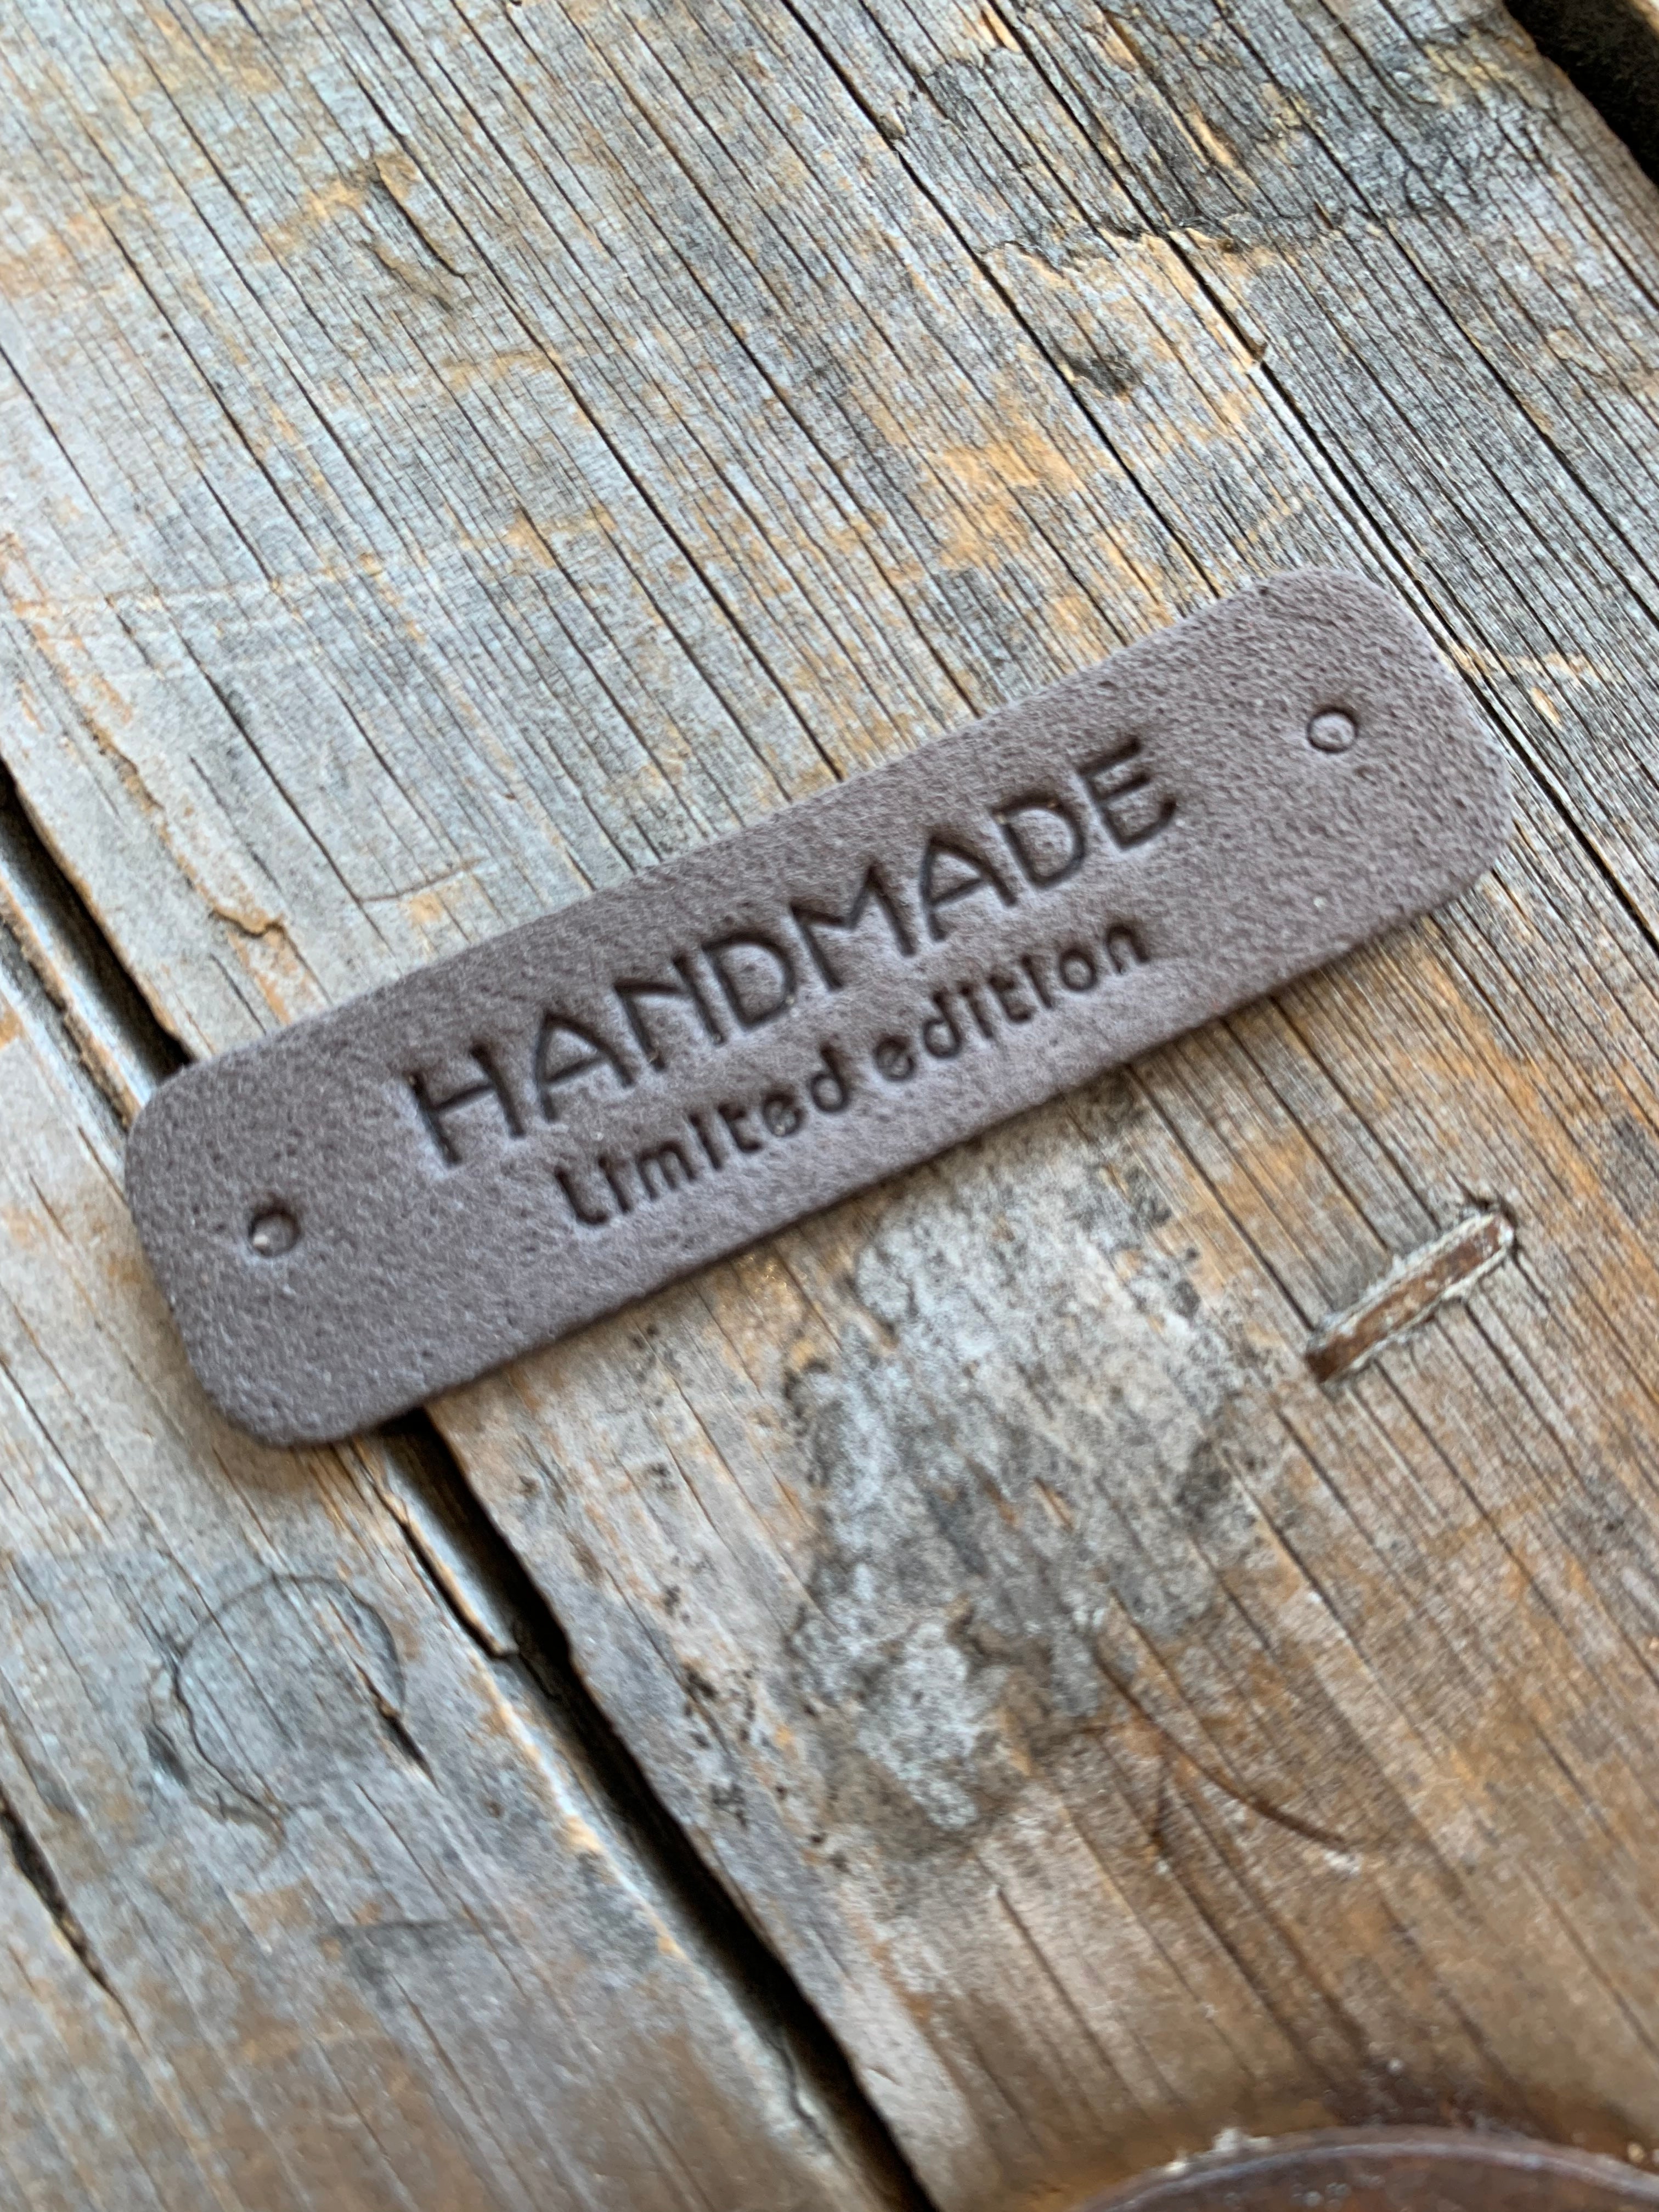 Étiquettes à projet - Handmade Limited Edition